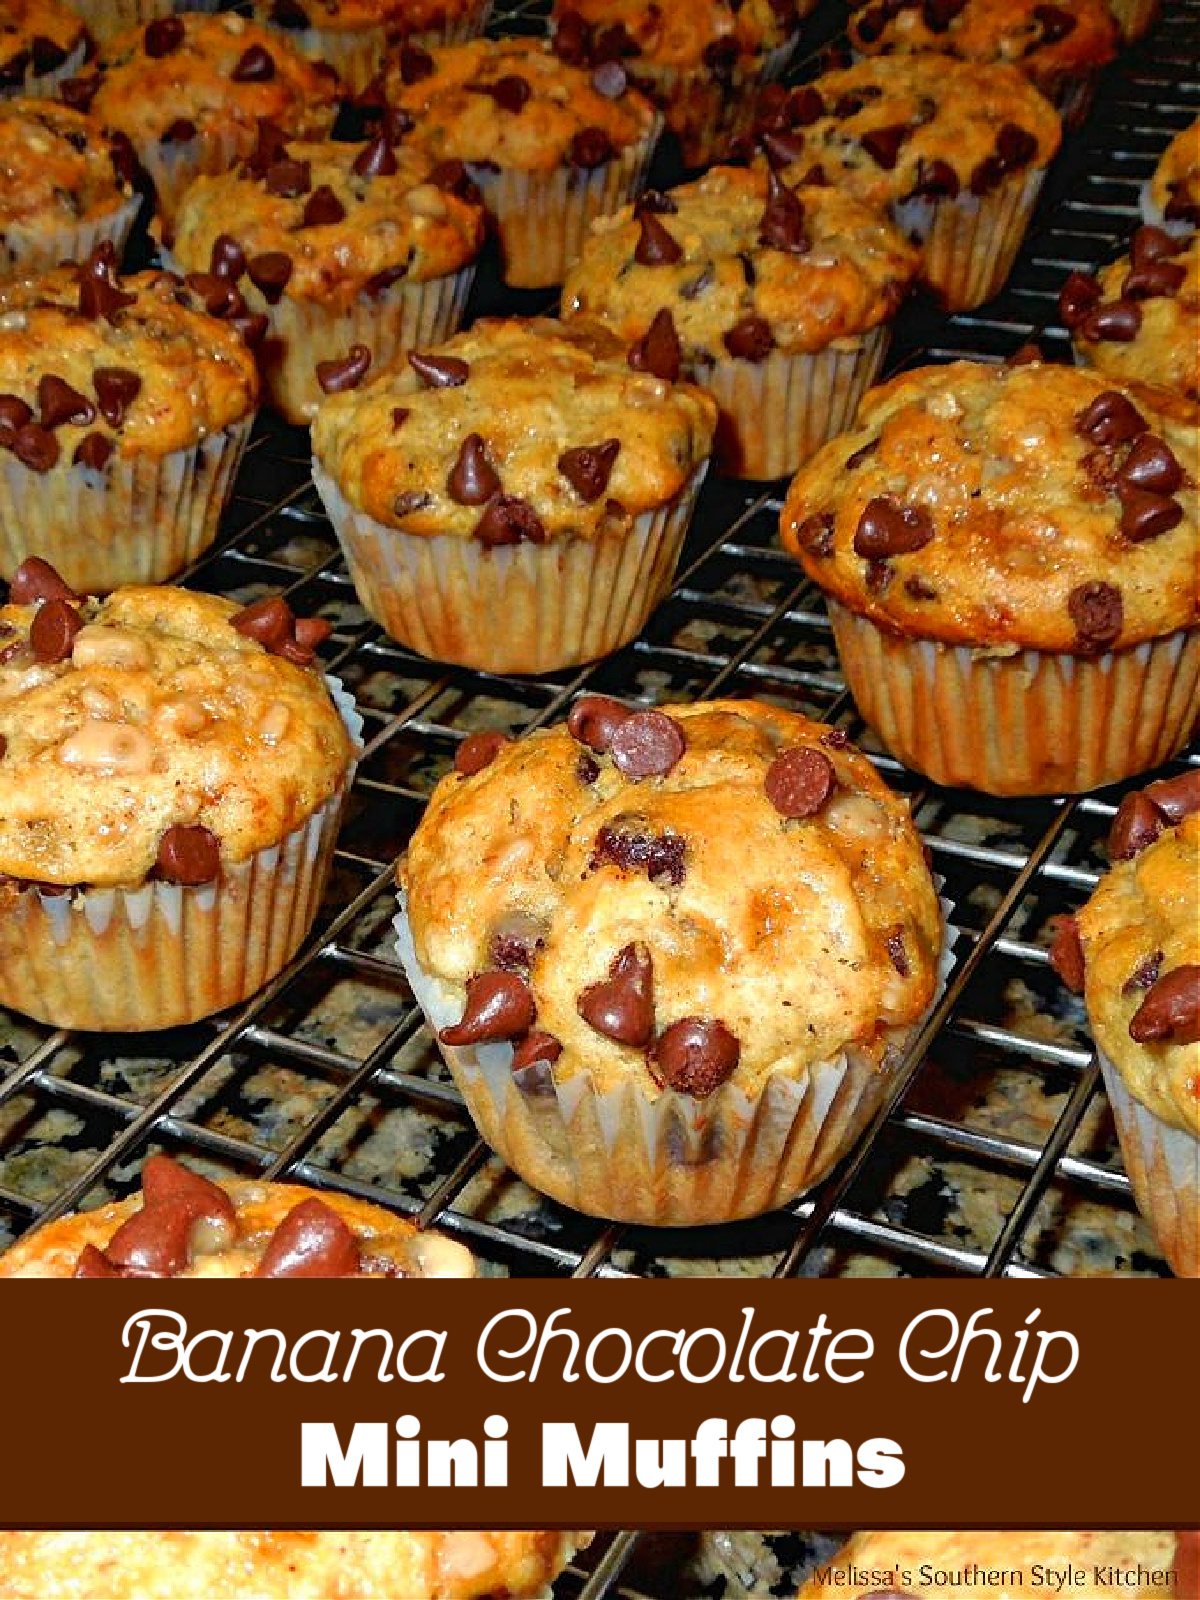 banana-chocolate-chip-mini-muffins-recipe
